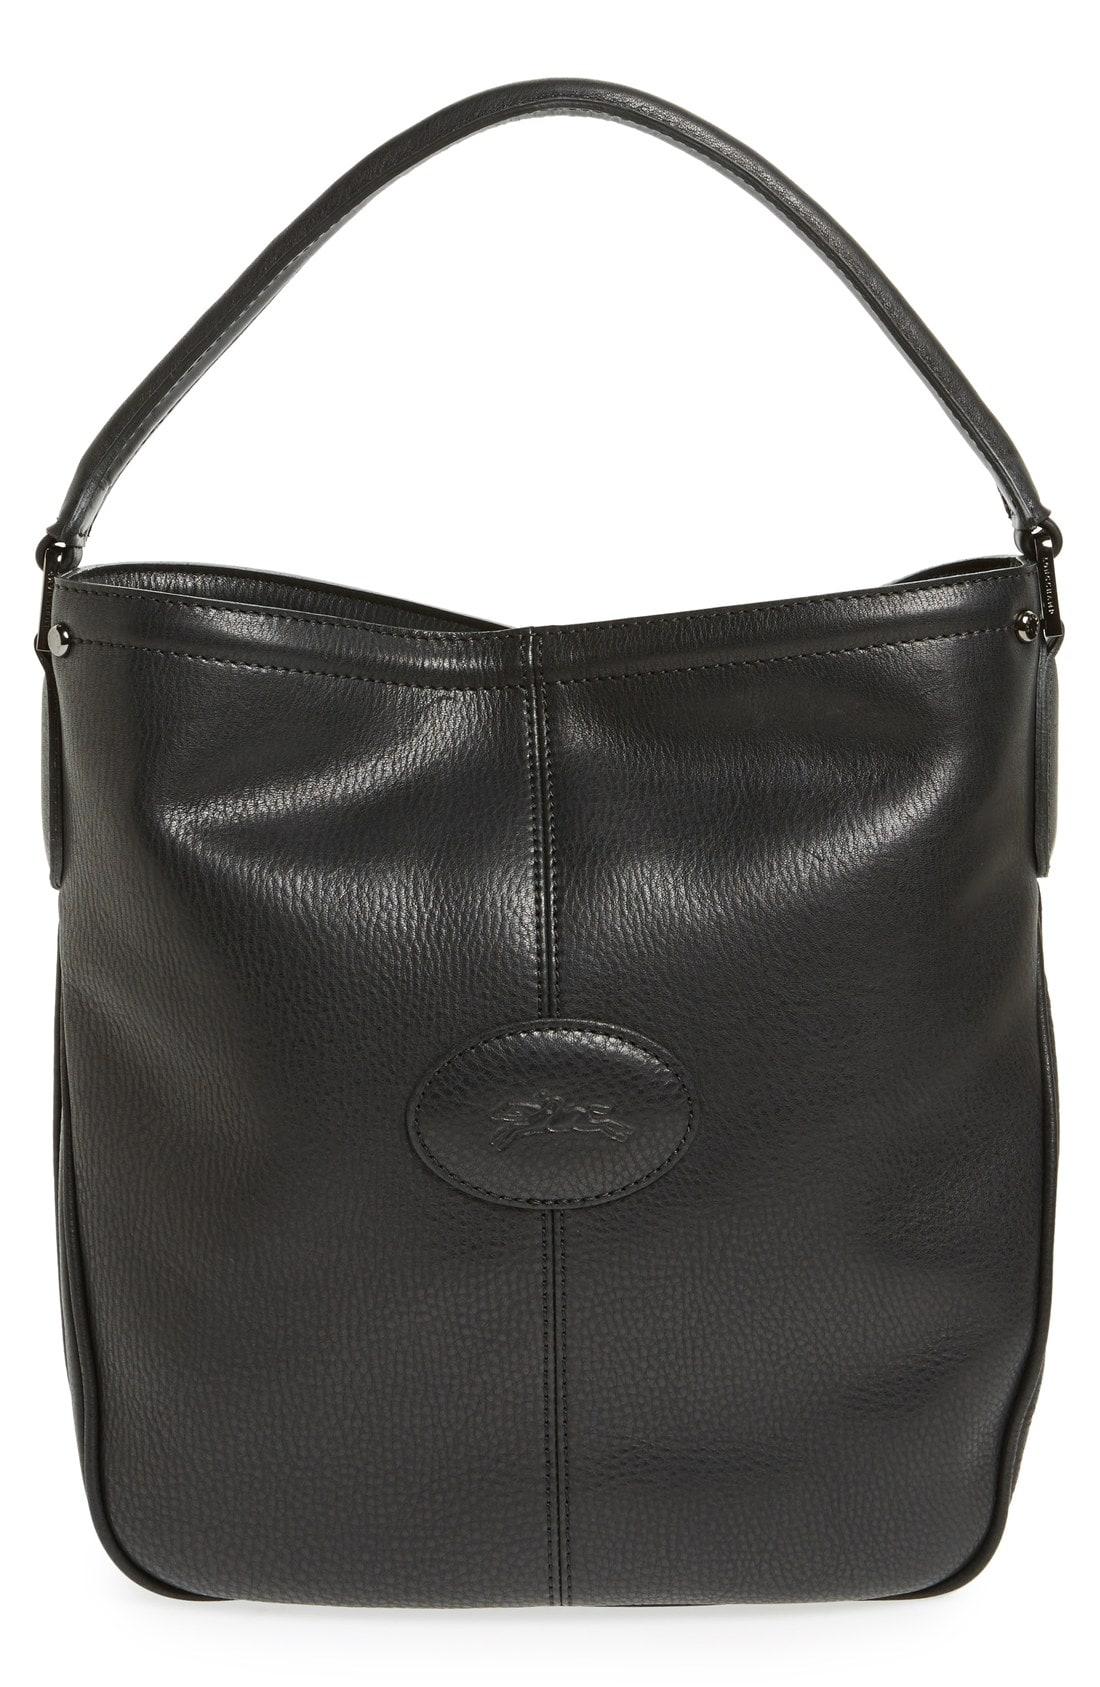 Longchamp Mystery Leather Hobo Bag 